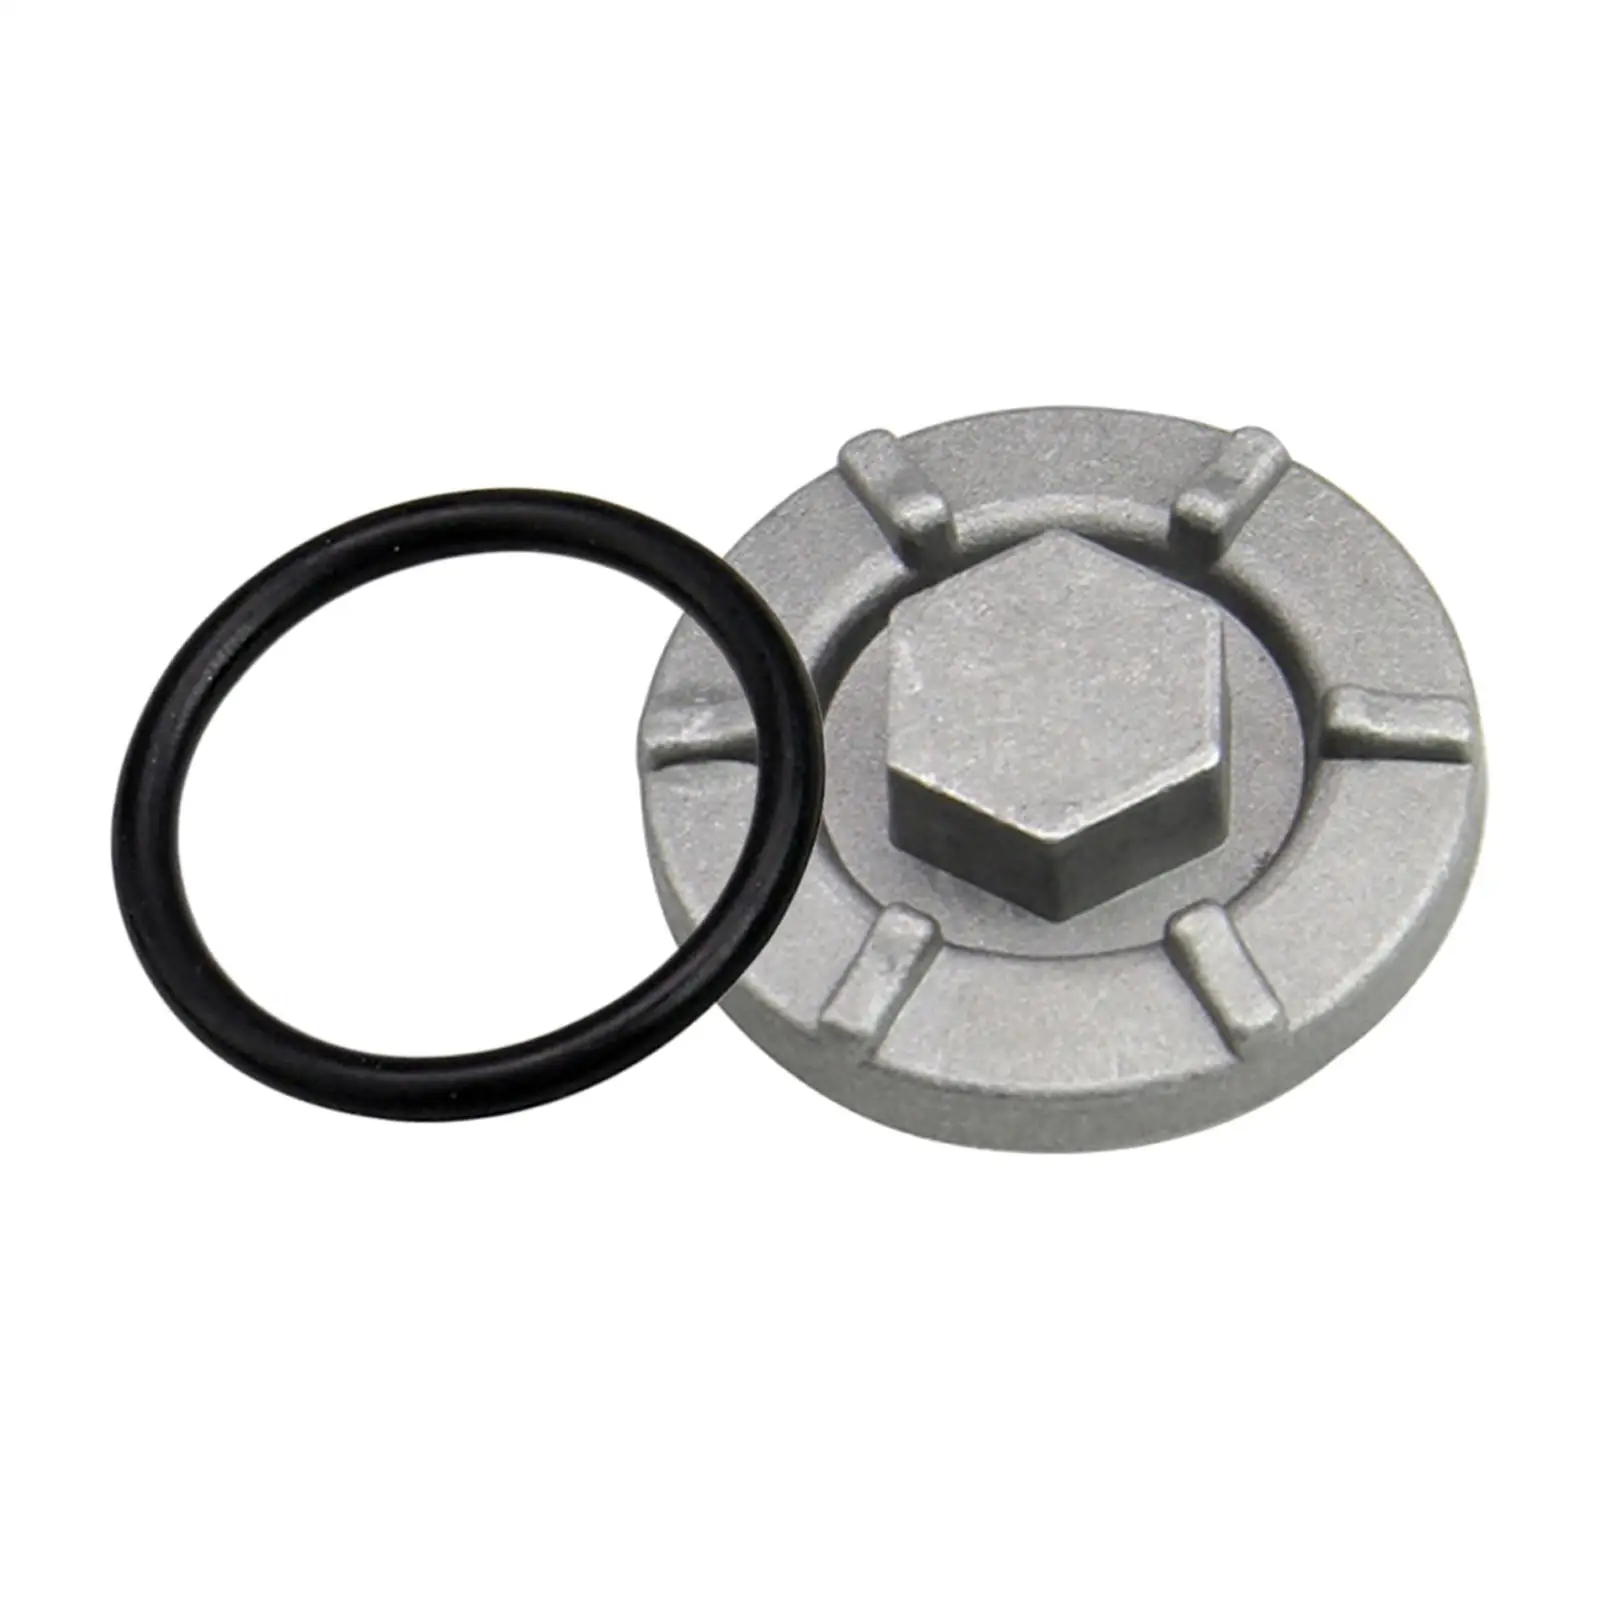 4HC-15351-00-00 Oil Drain Plug for Spare Parts Durable Cast Aluminum